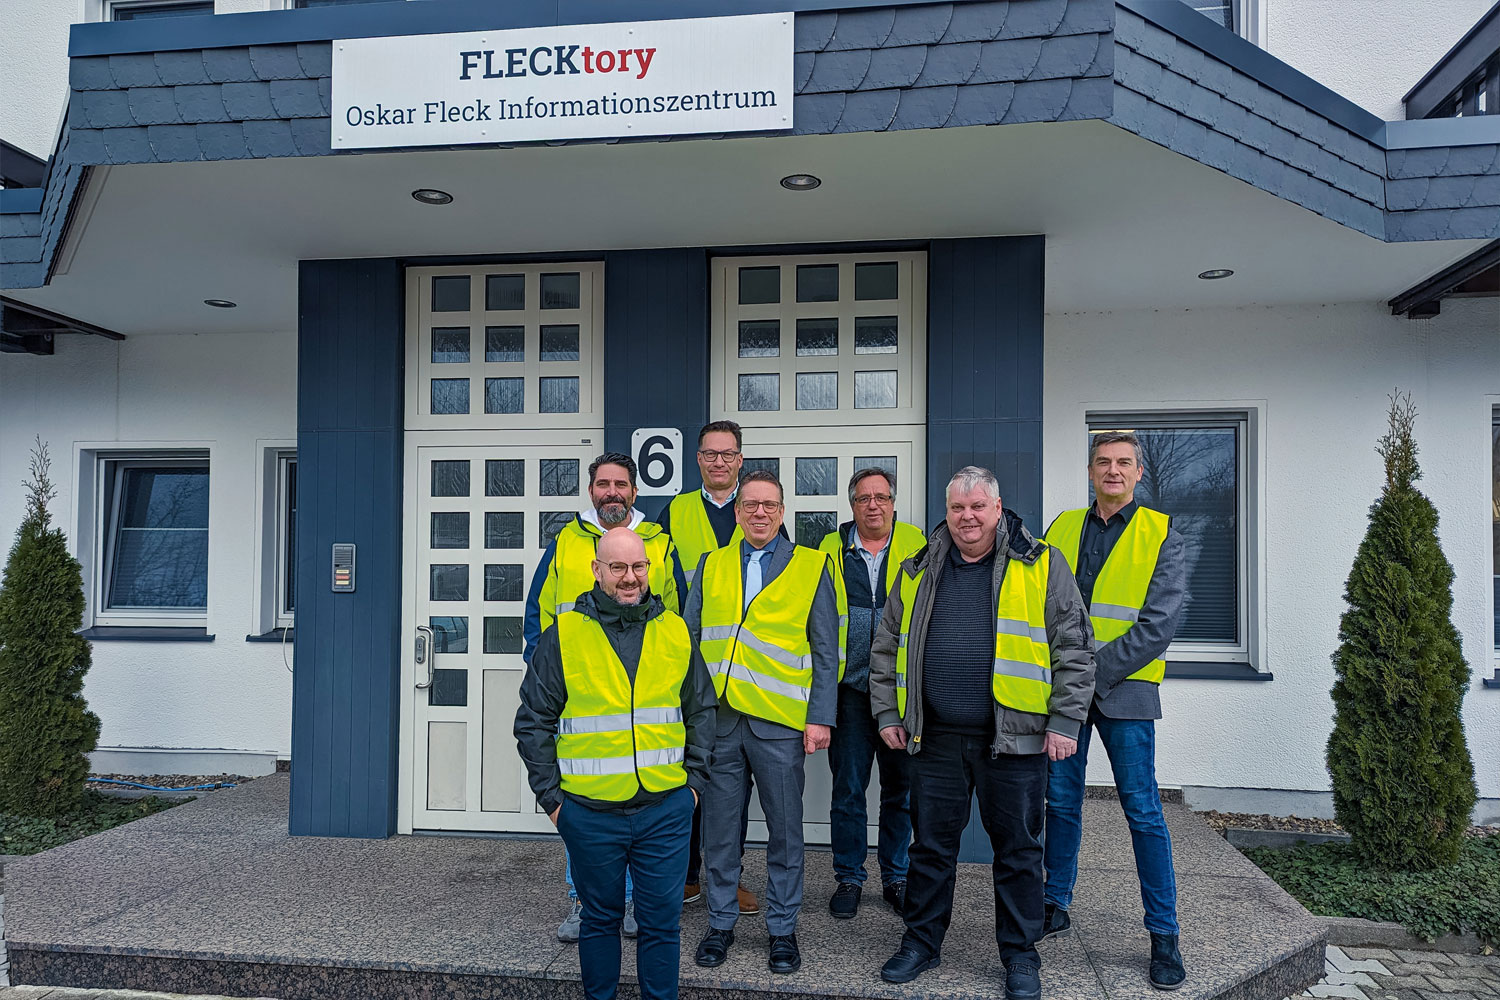 Experten im Dialog: Planungsgruppe Dach besucht die FLECKtory – Oskar Fleck Informationszentrum zum Wissensaustausch